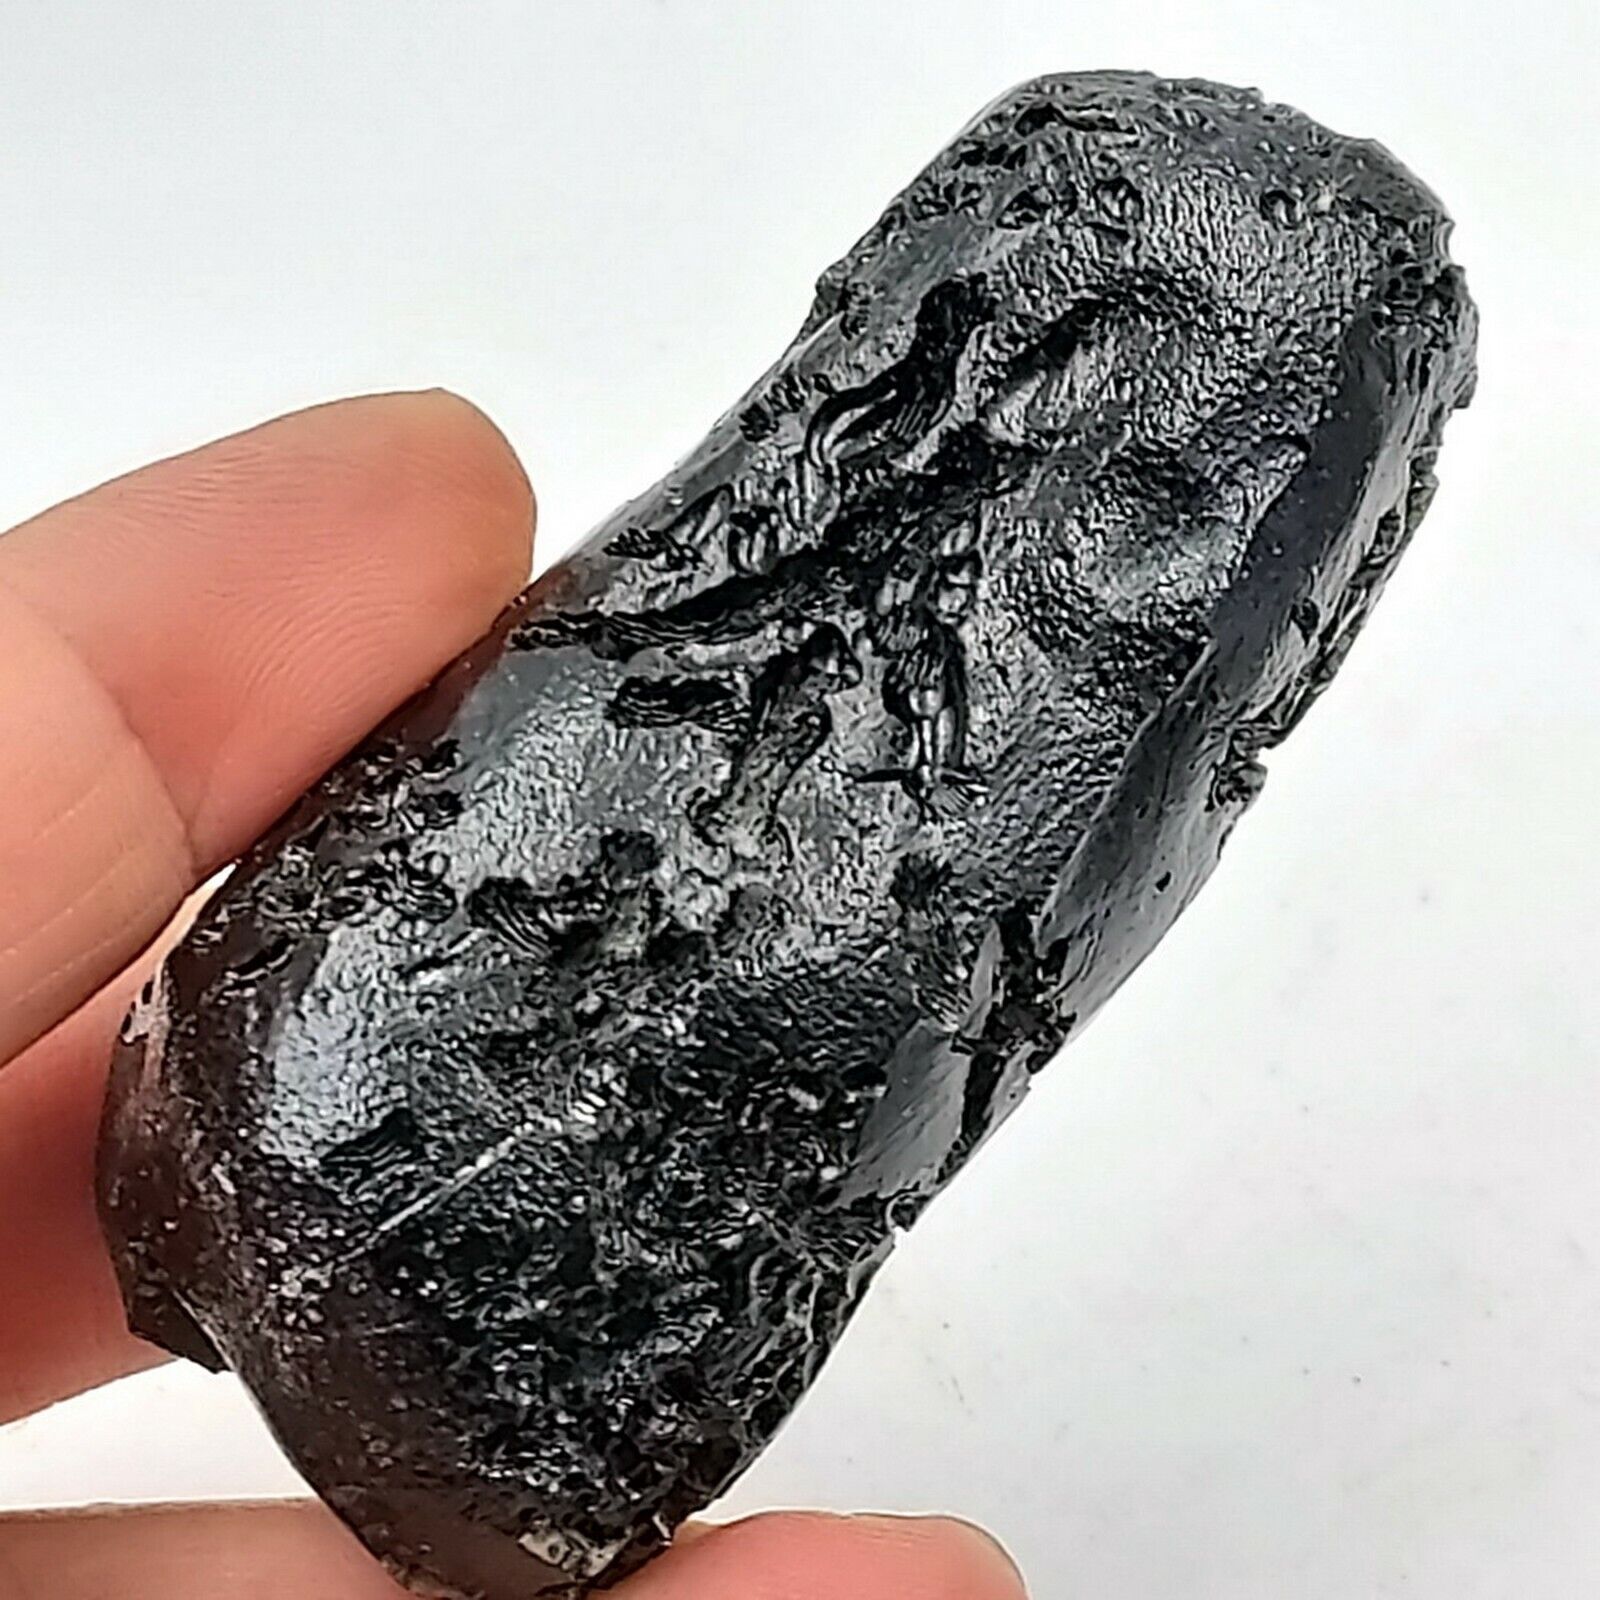 102 g. Museum Grade Rare Anda Skin Groove Indochinite Tektite Meteorite Cracked